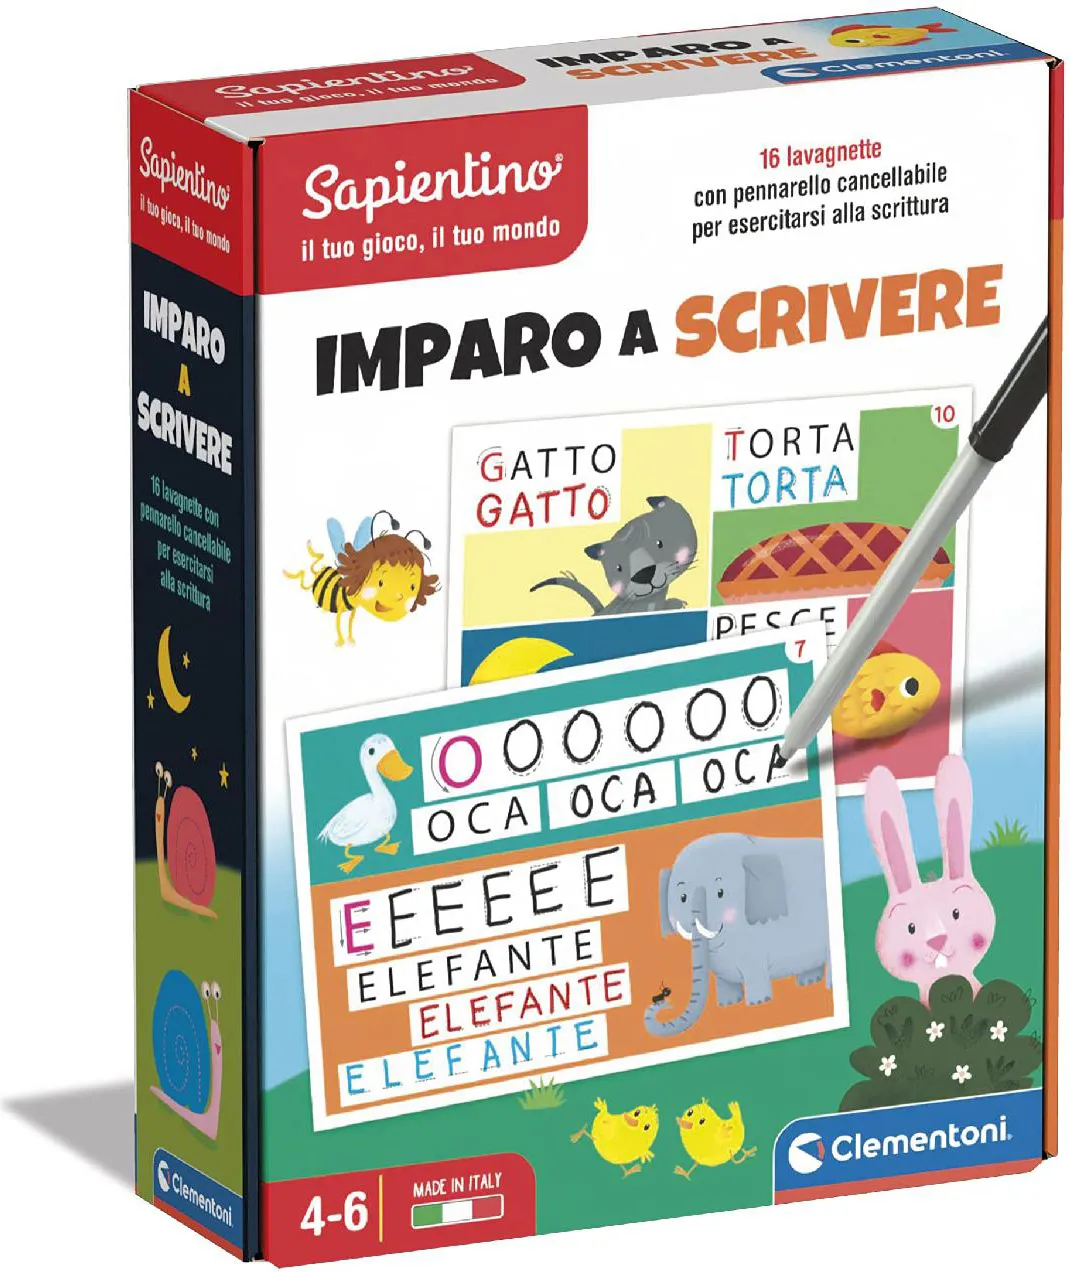 Clementoni Sapientino Imparo a Scrivere - Gioco per imparare a scrivere  Gioco Educativo Giocattolo per Bambini da 5+ Anni - 16142